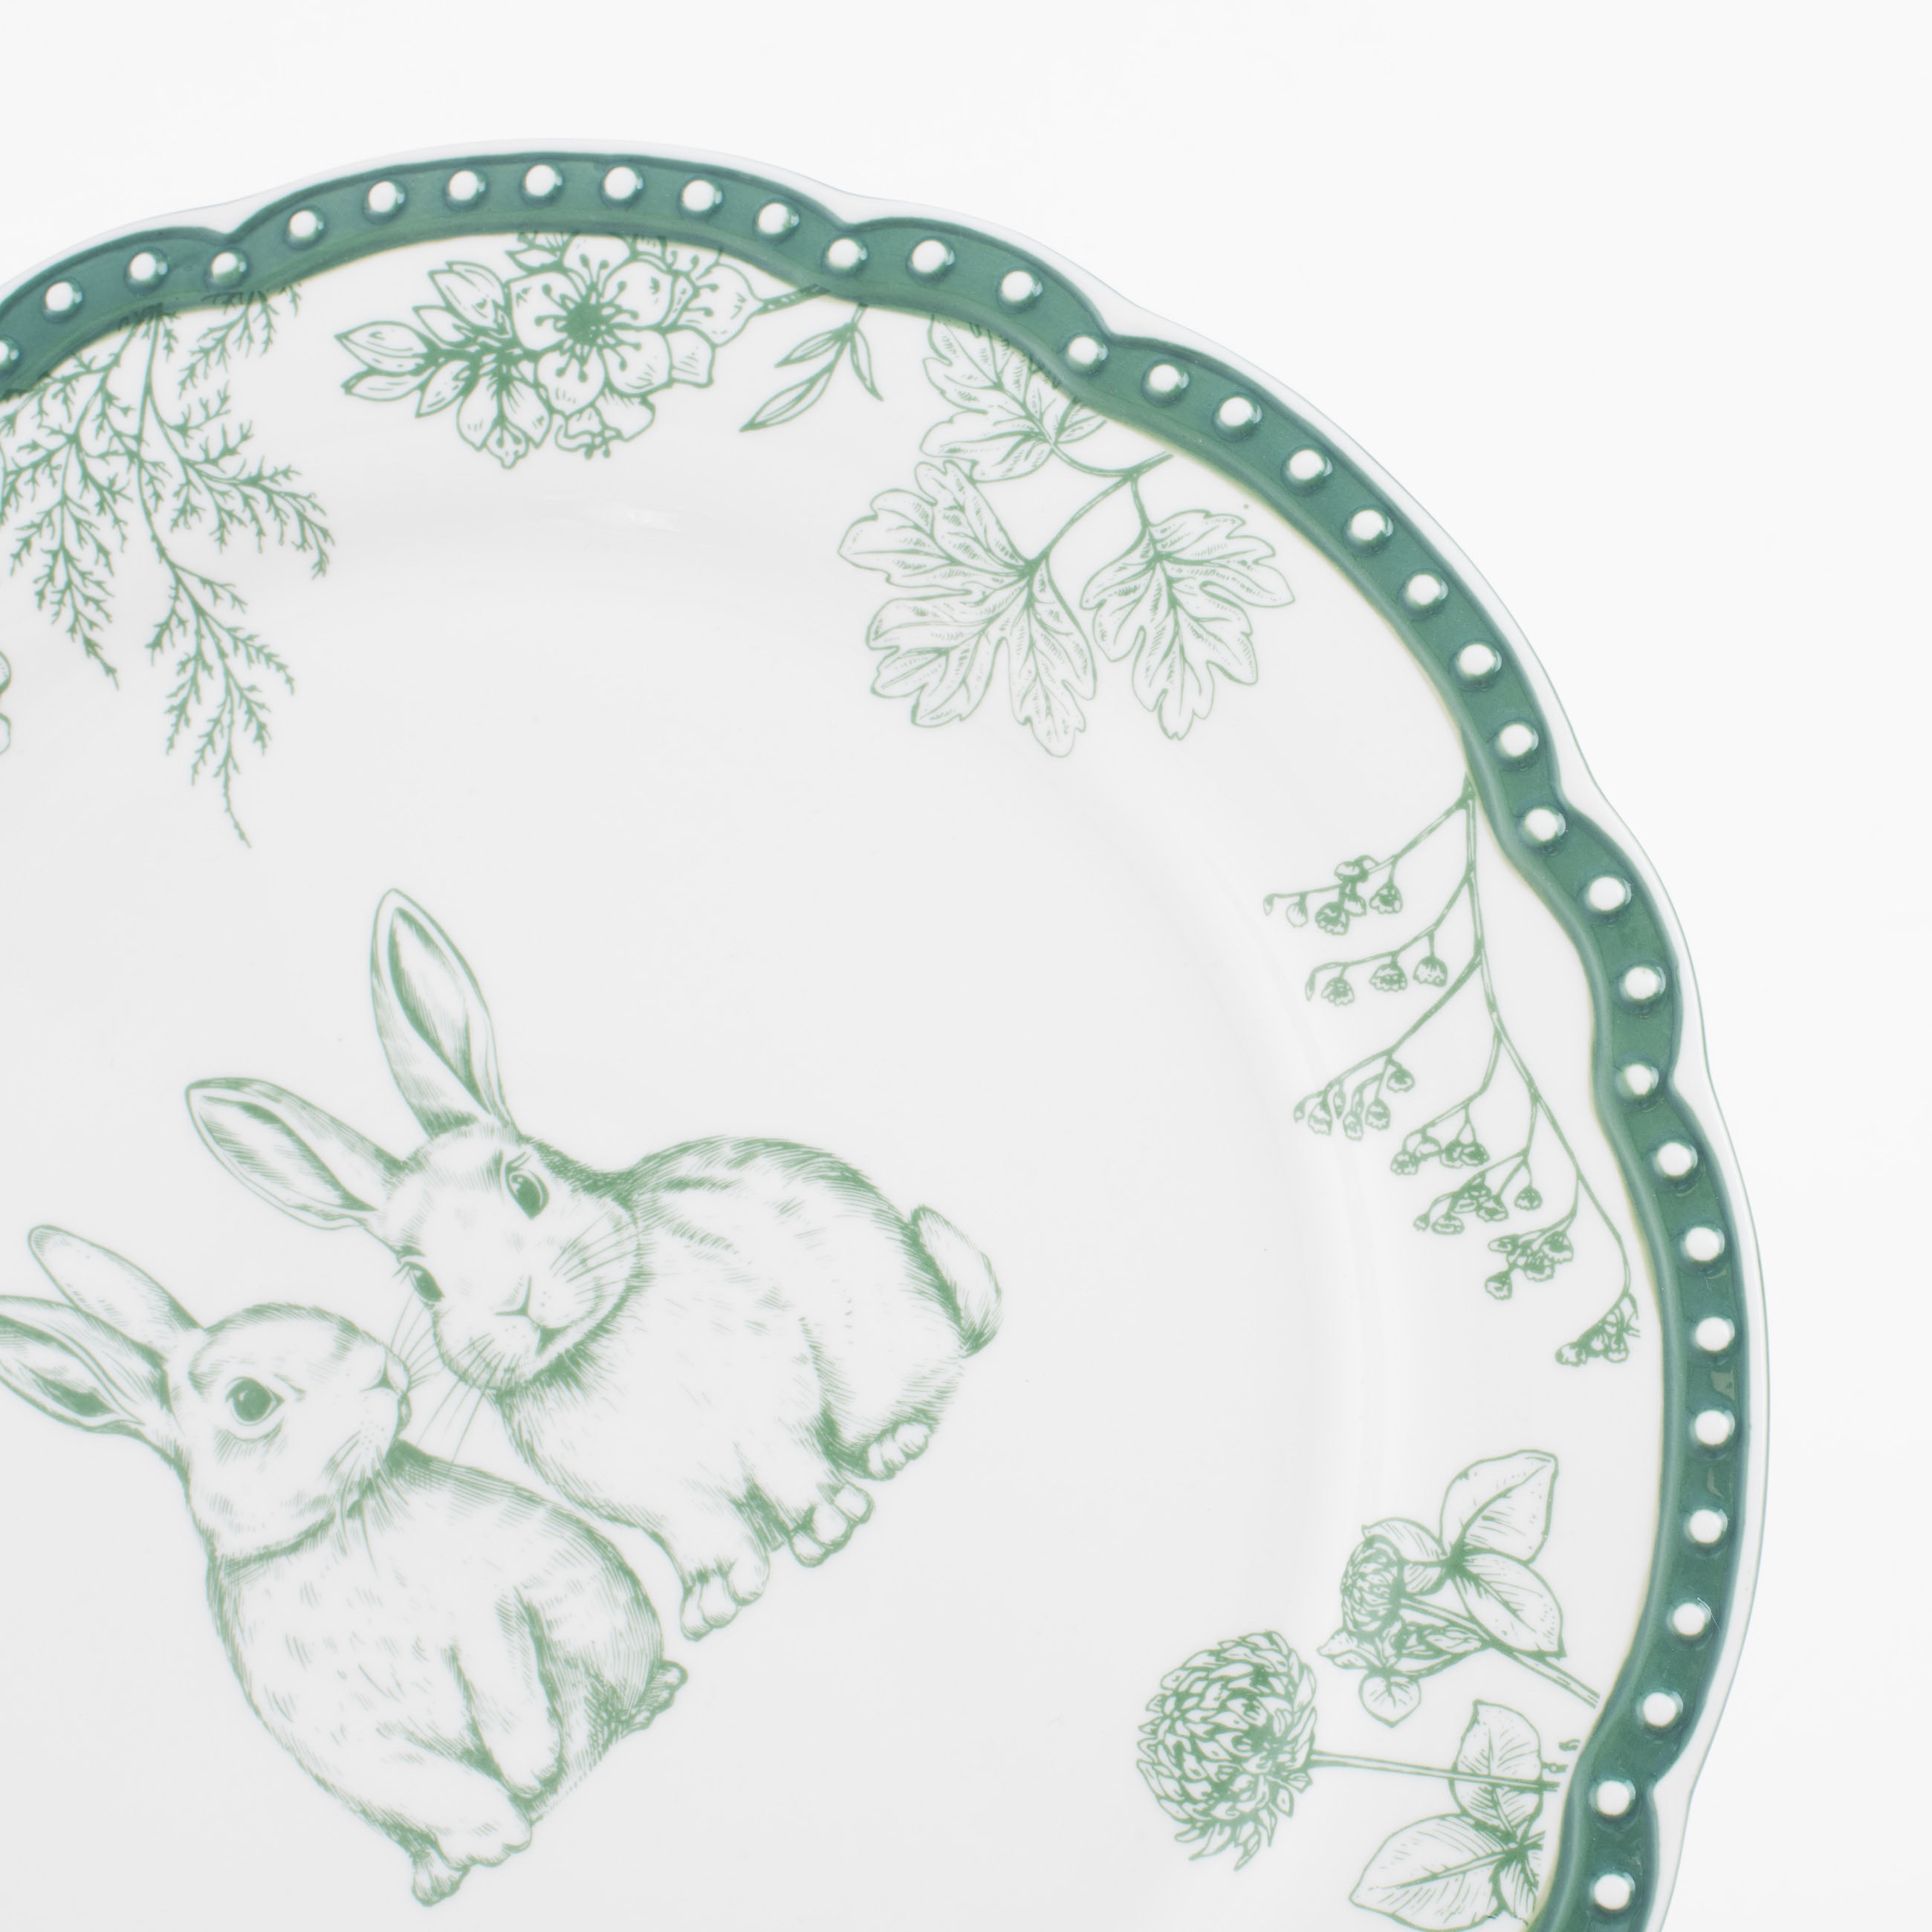 Тарелка обеденная, 27 см, керамика, бело-зеленая, Кролики и цветы, Easter blooming изображение № 4